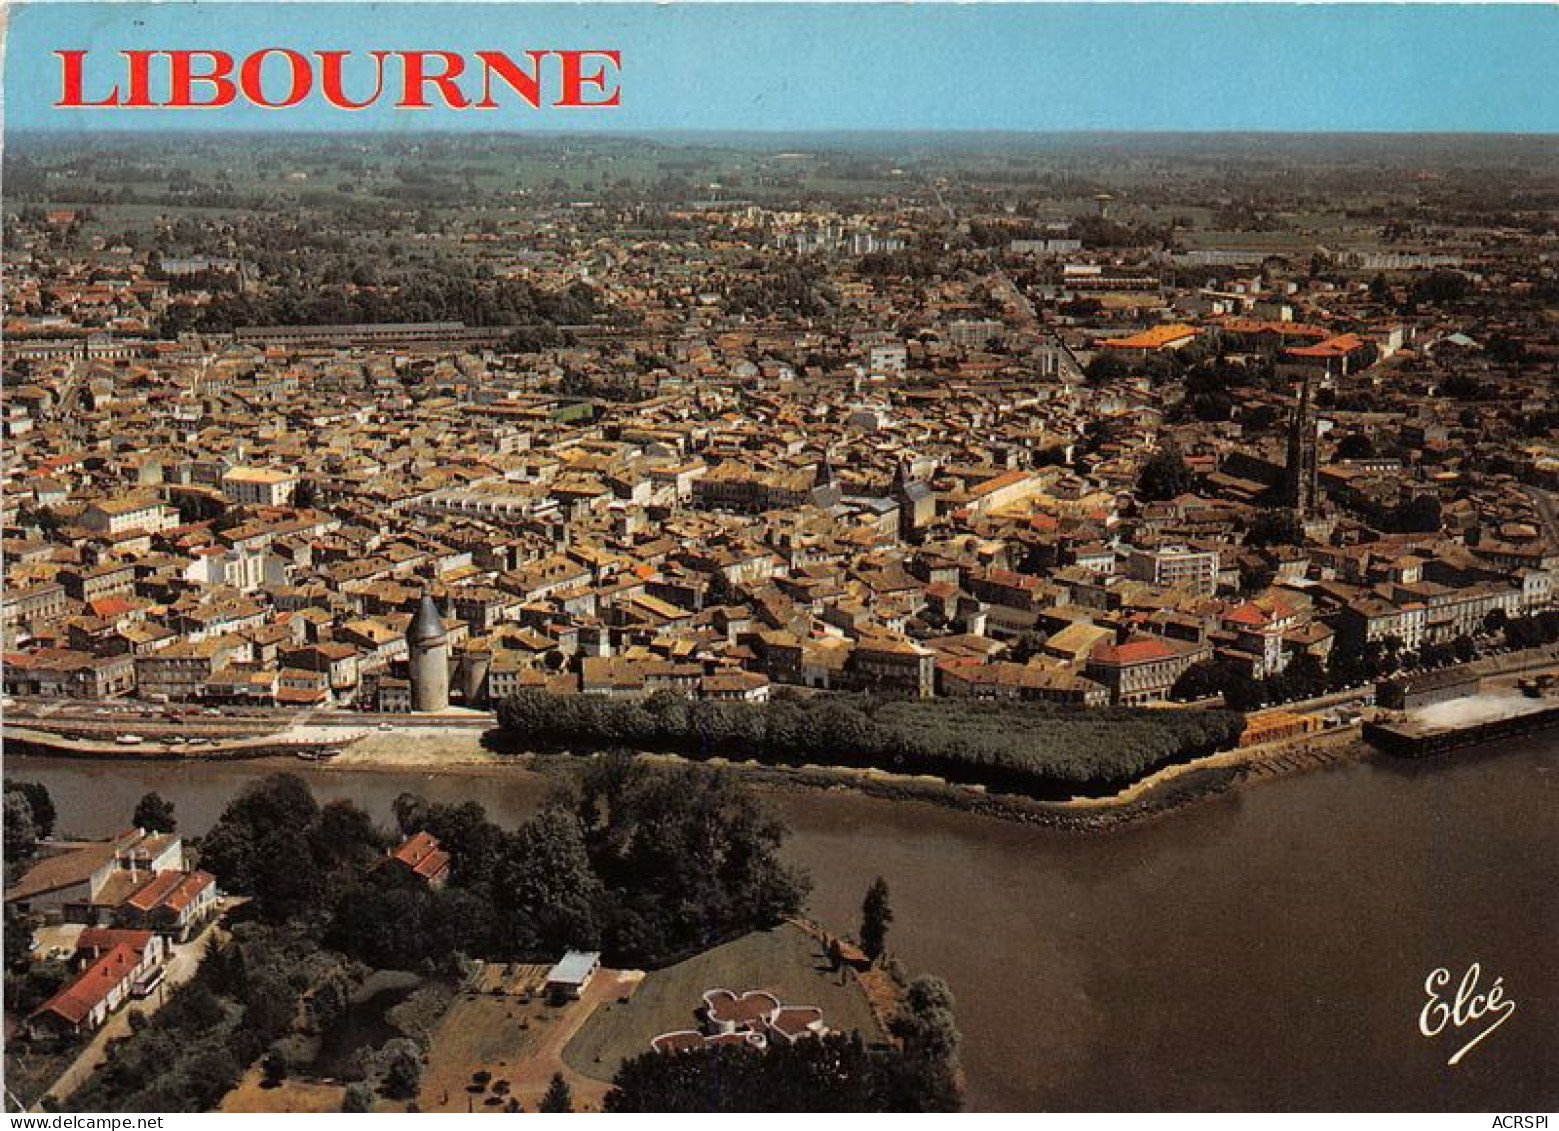 LIBOURNE Vue Generale De La Ville Avec La Vieille Tour 20(scan Recto-verso) MA1182 - Libourne